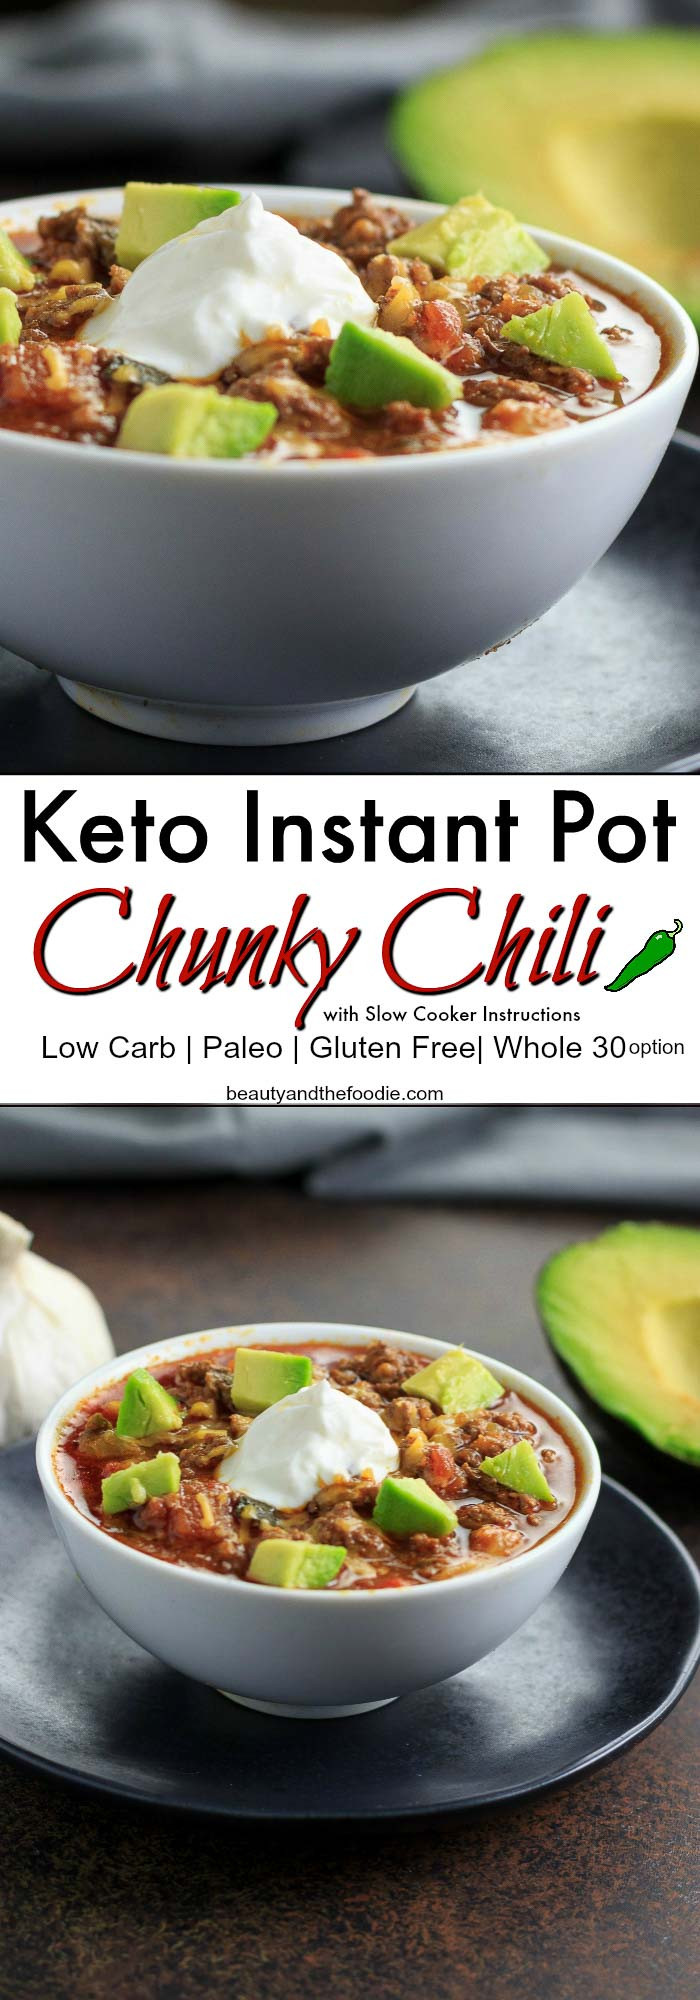 Instant Pot Keto Chili
 Keto Instant Pot Chunky Chili